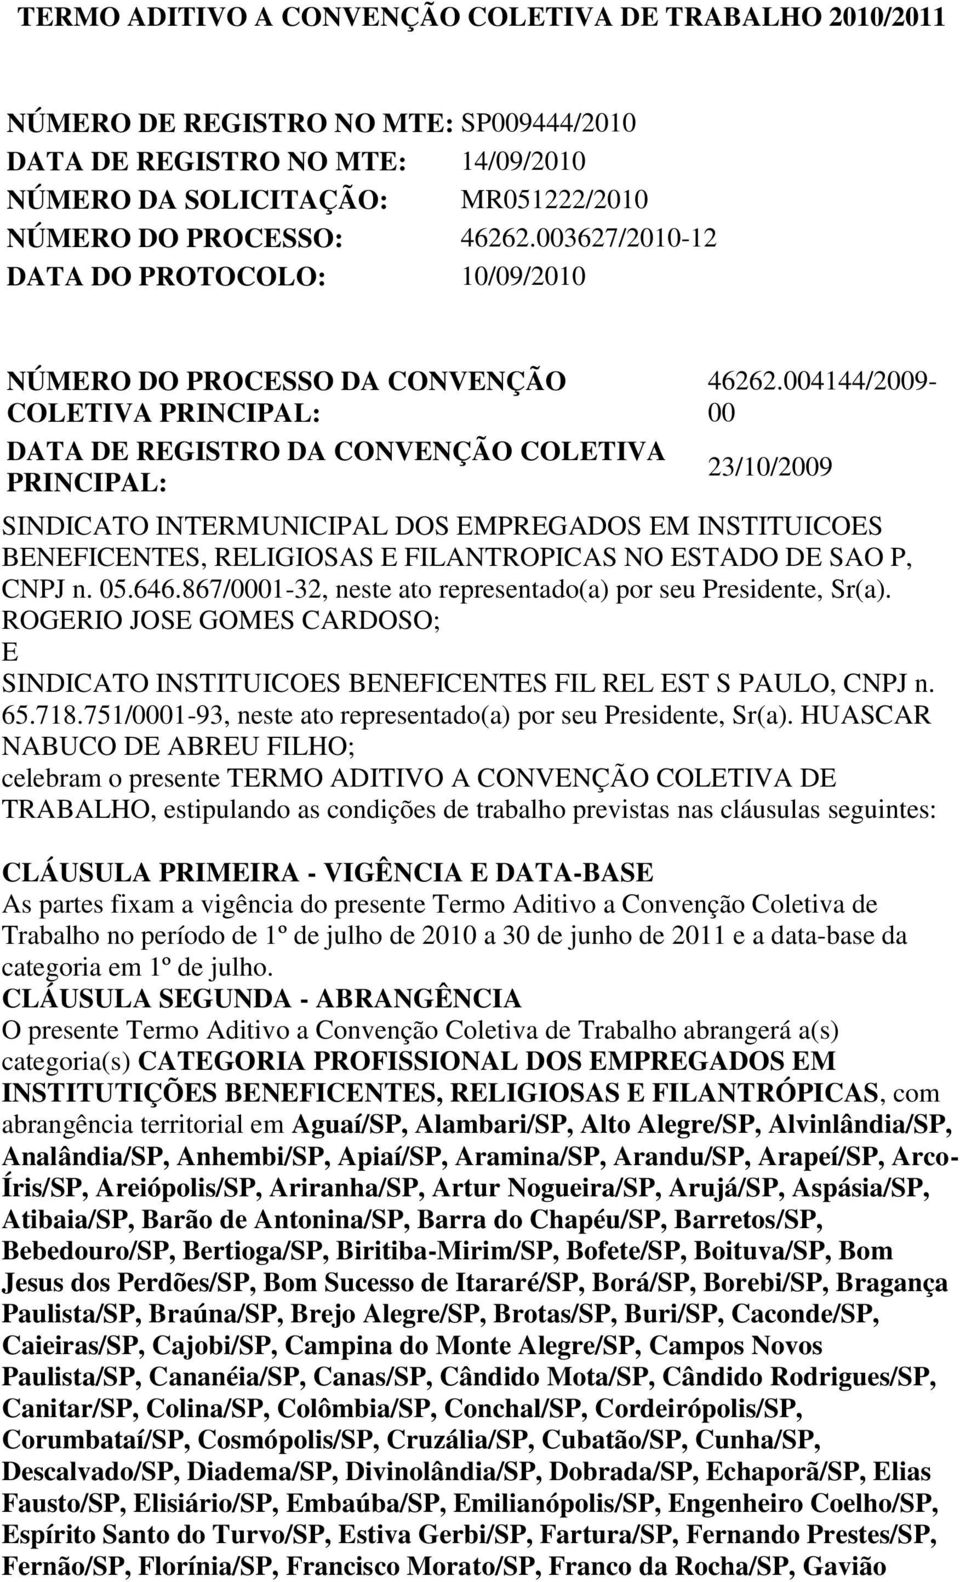 004144/2009-00 23/10/2009 SINDICATO INTERMUNICIPAL DOS EMPREGADOS EM INSTITUICOES BENEFICENTES, RELIGIOSAS E FILANTROPICAS NO ESTADO DE SAO P, CNPJ n. 05.646.